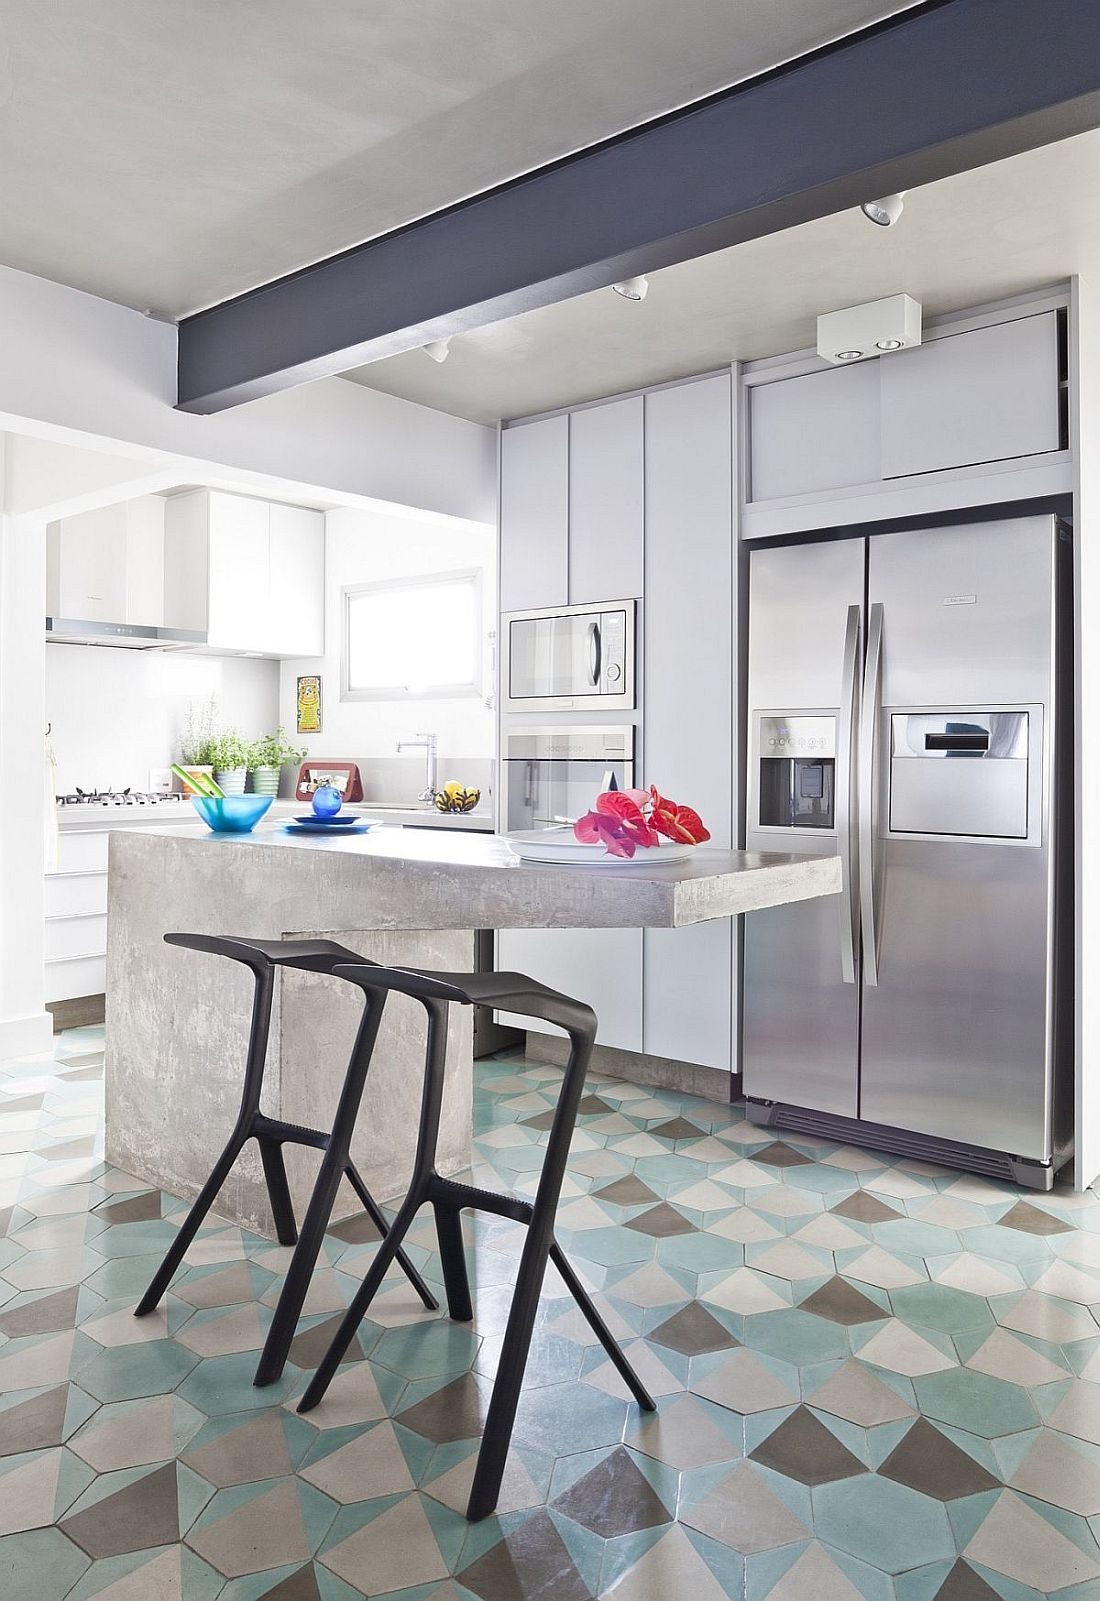 Hexagon Kitchen Floor Tiles
 10 Hexagonal Tiles Ideas for Kitchen Backsplash Floor and